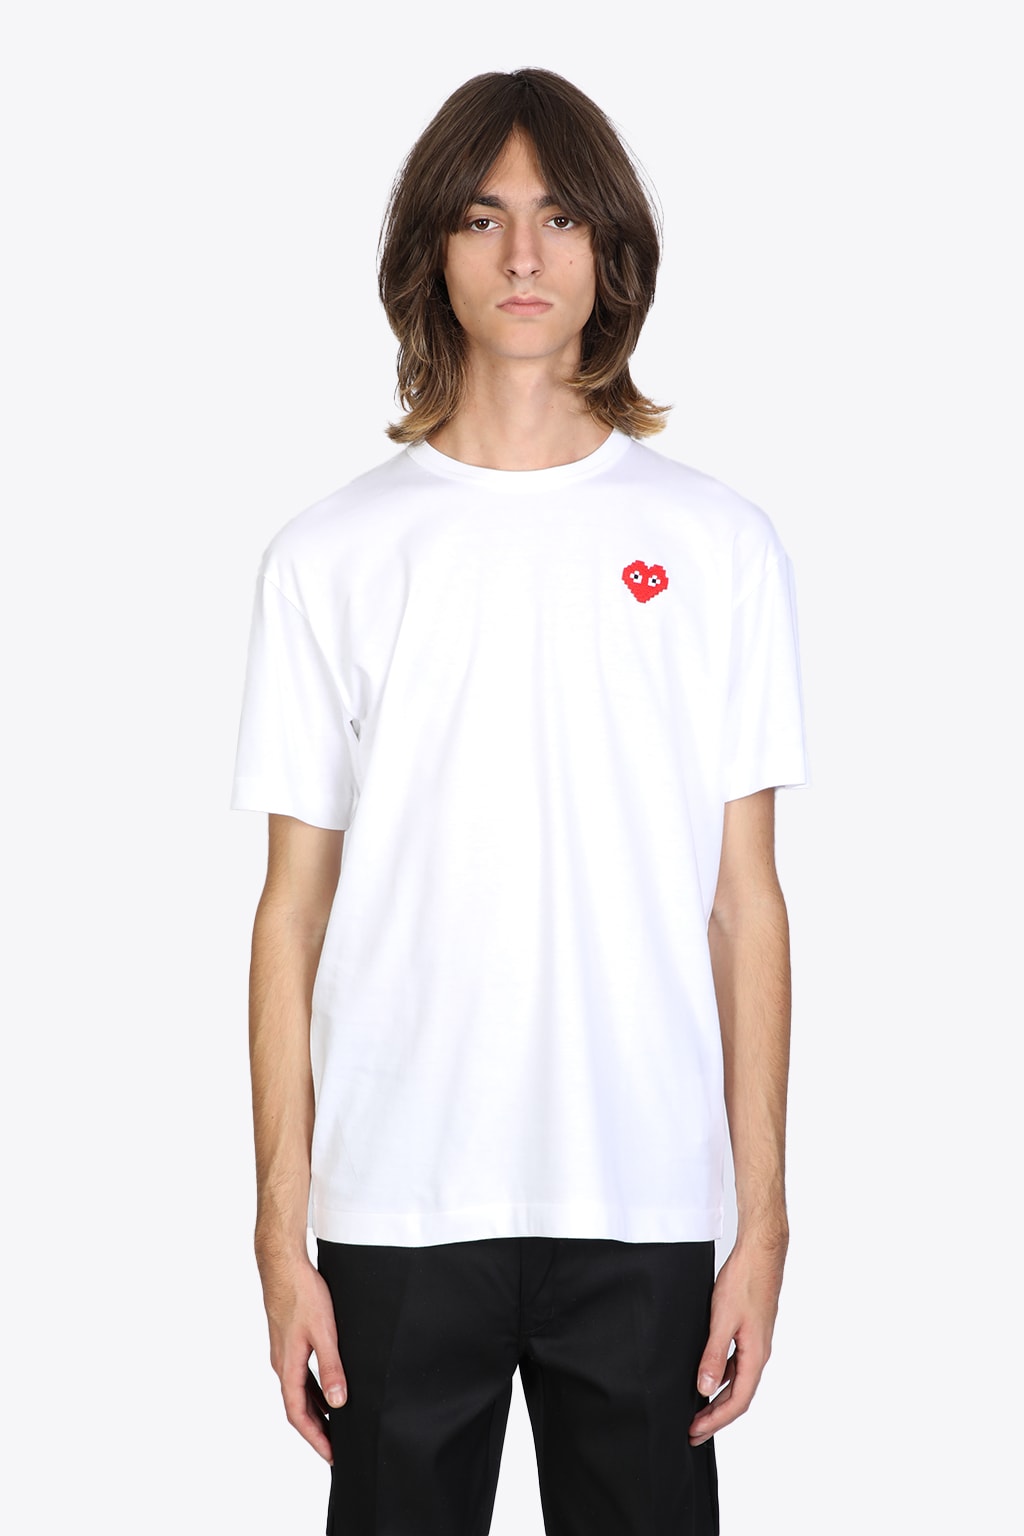 Comme des Garçons Shirt Boy Mens T-shirt Short Sleeve Knit White T-shirt With Pixel Heart Patch.